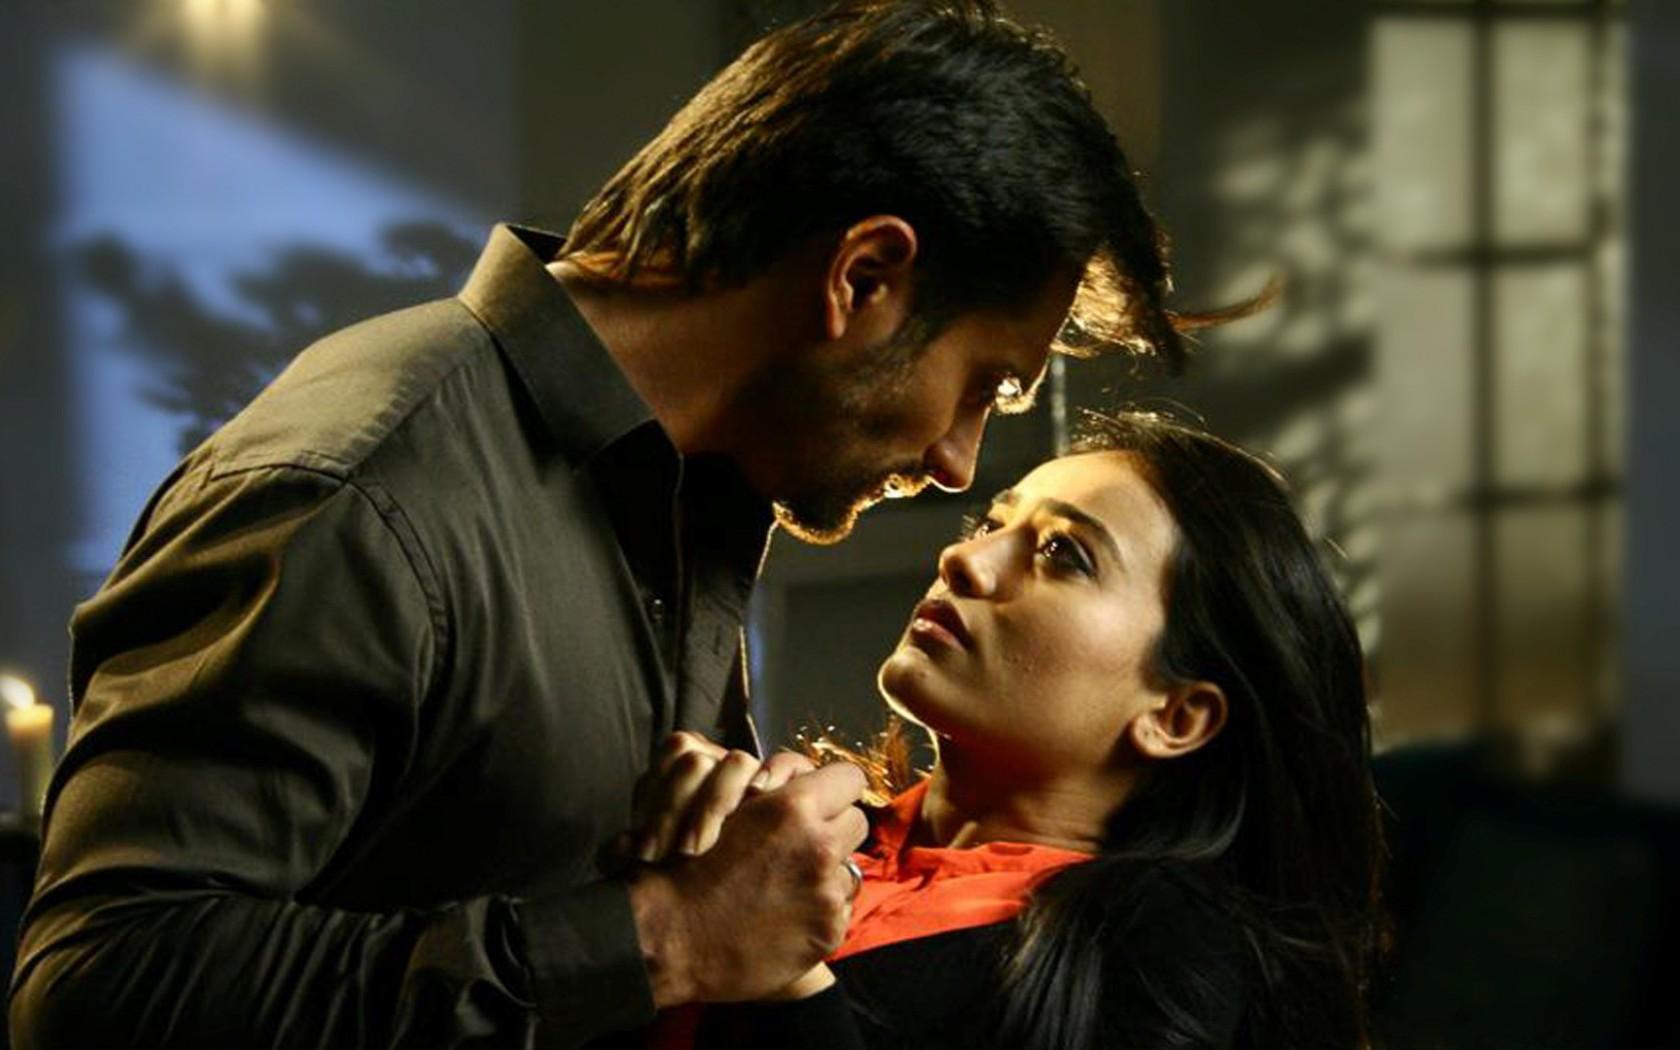 Download 1680x1050 Surbhi Jyoti as Zoya Khan and Karan Singh